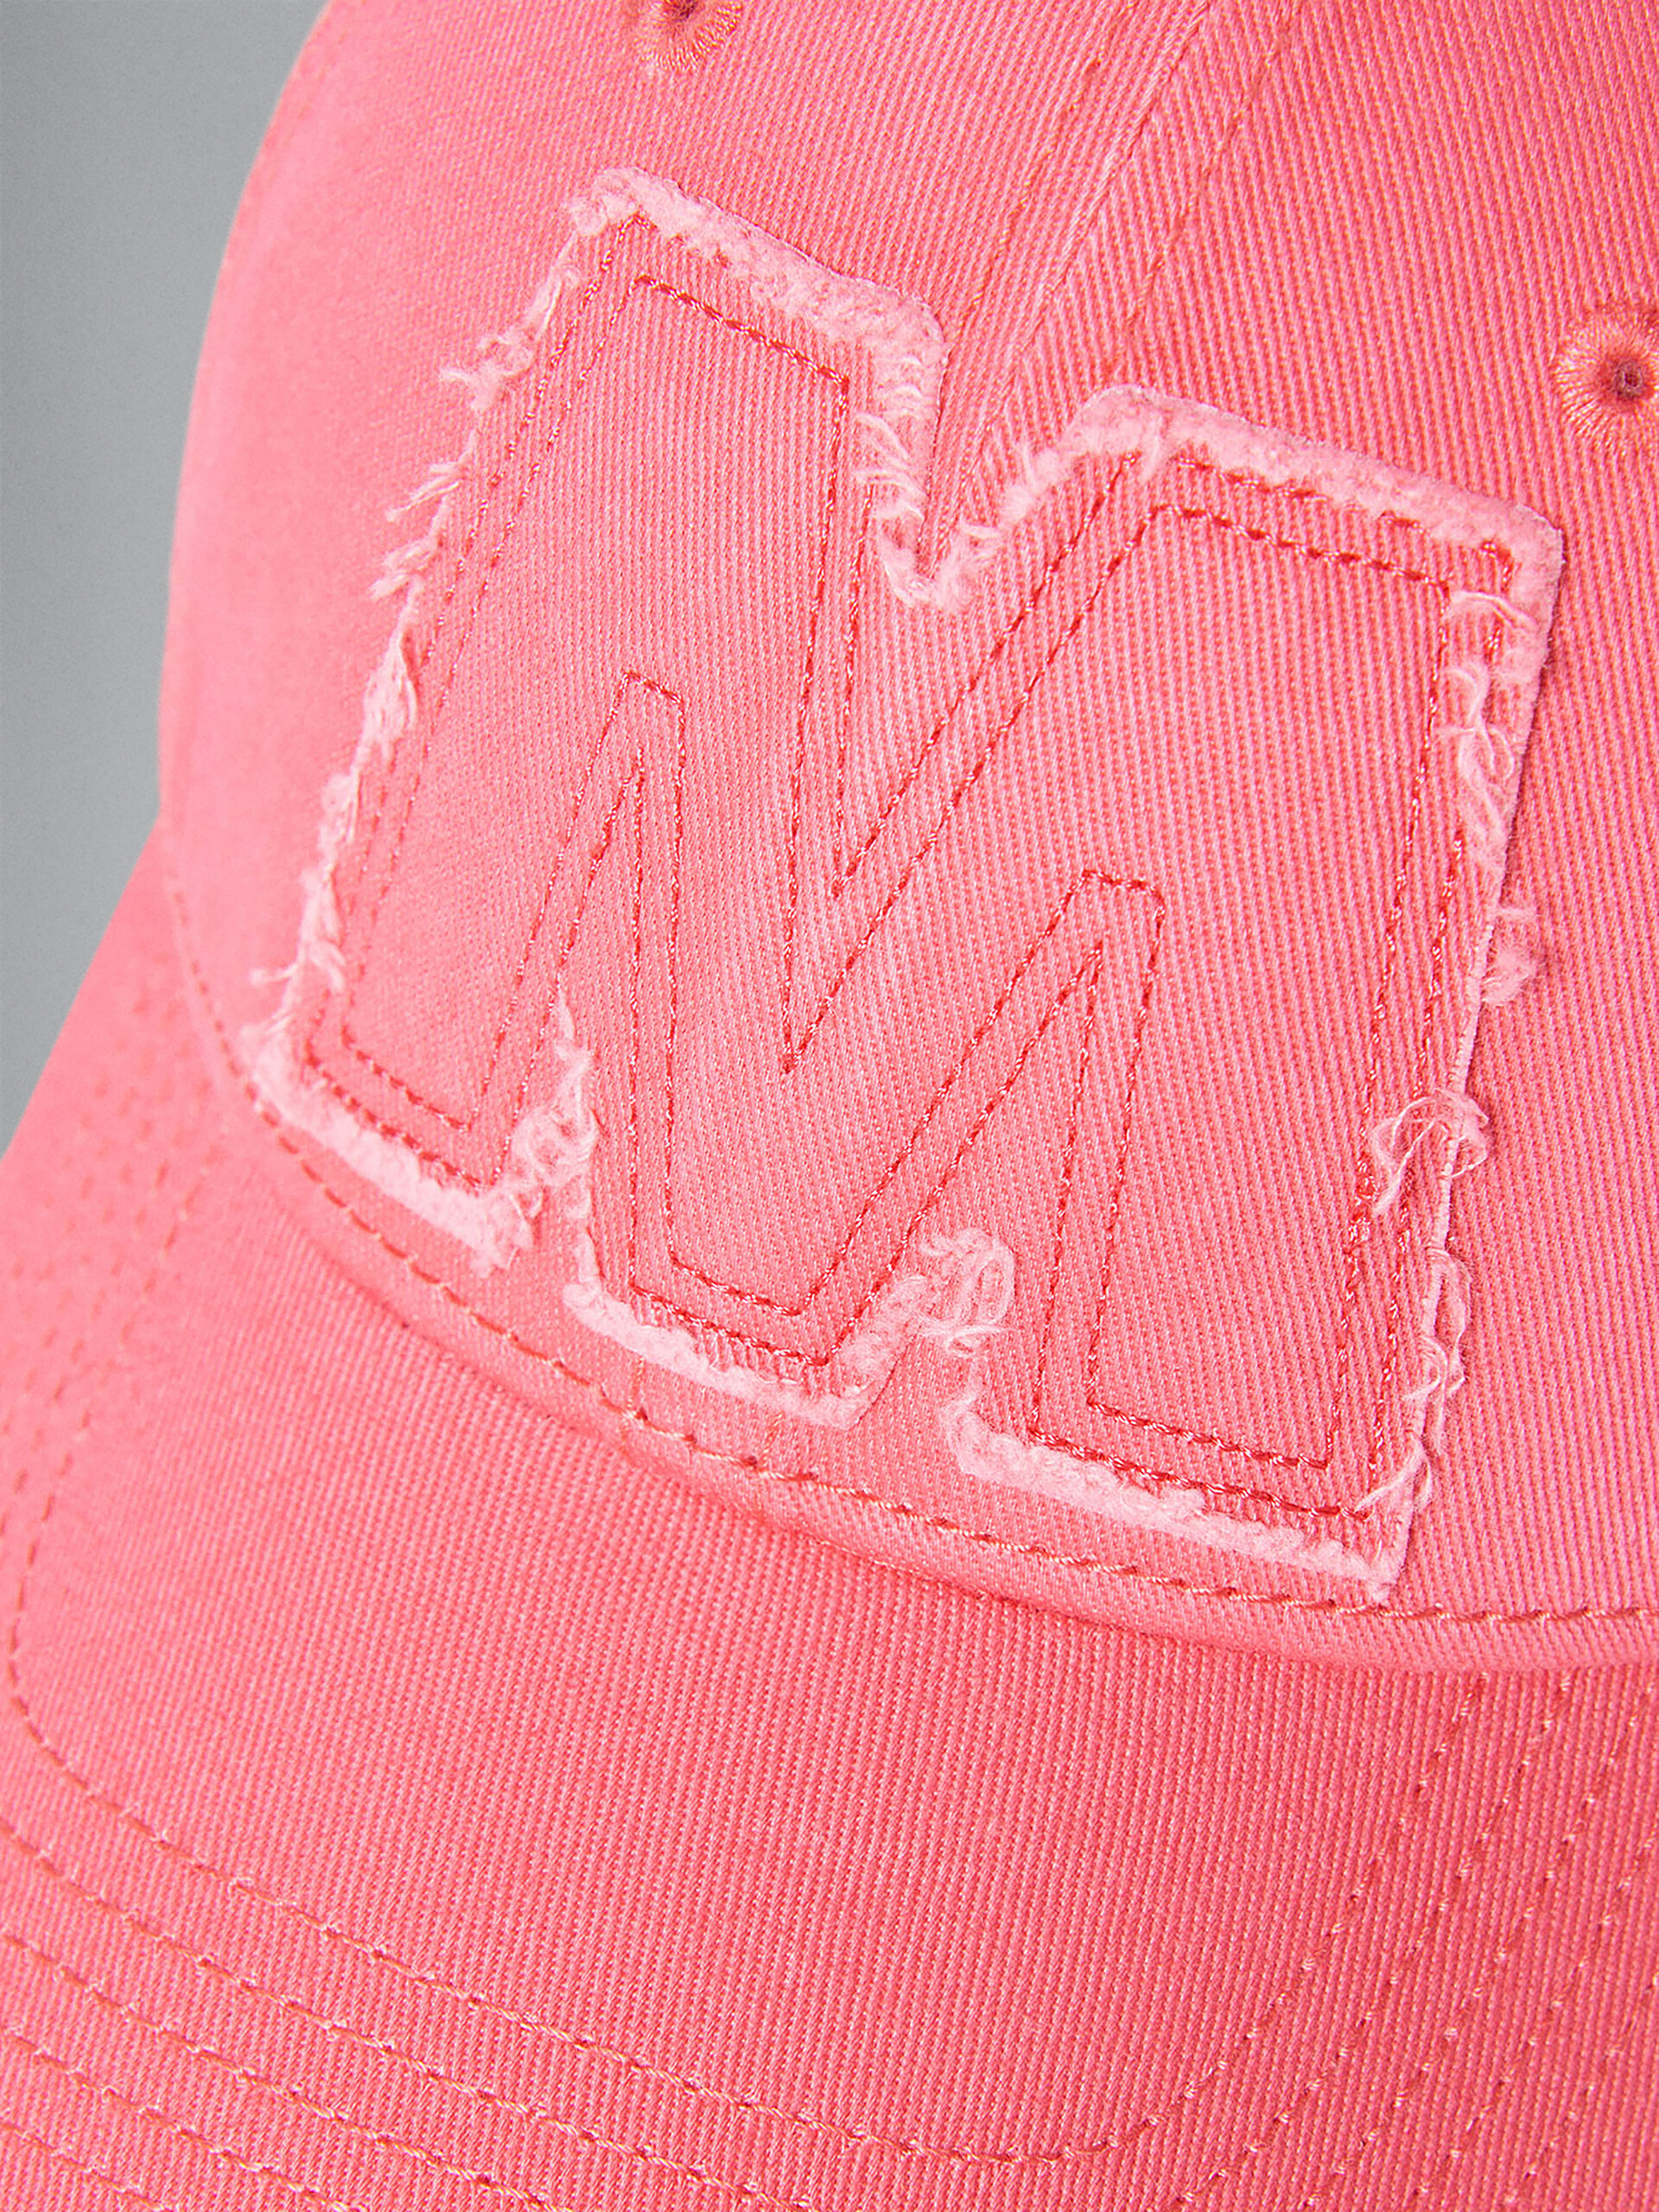 Gorra de béisbol fucsia con logotipo Big M - Gorras - Image 3